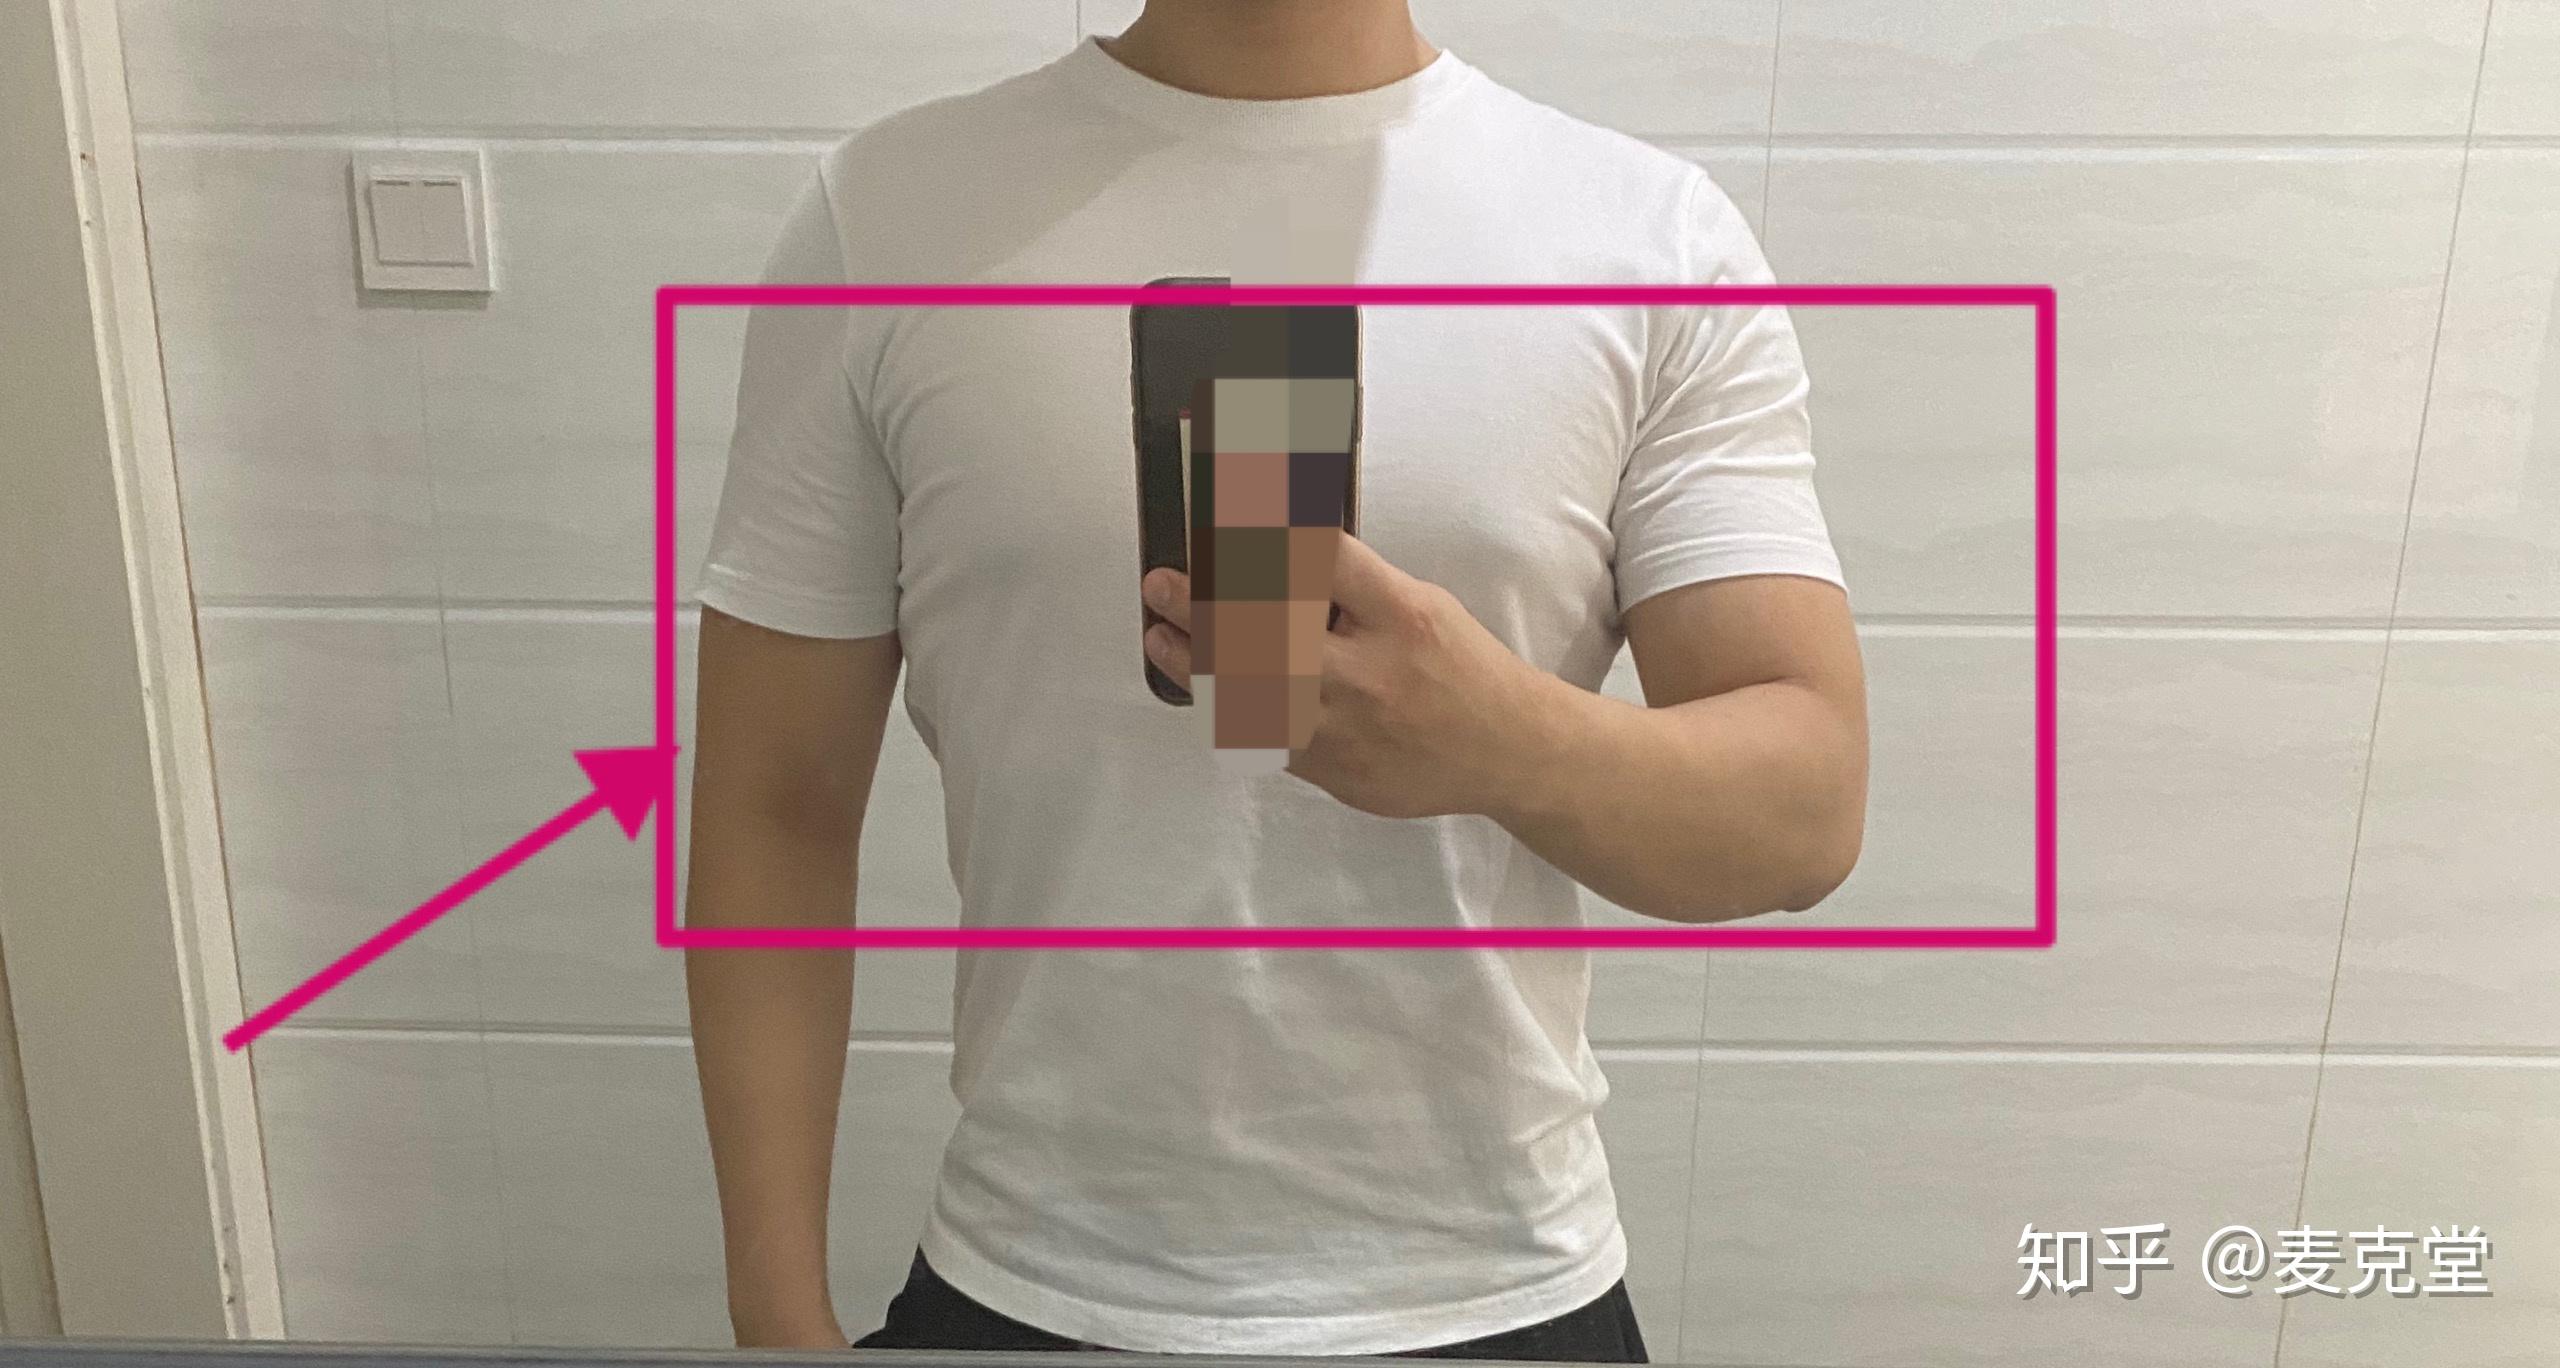 男生胸部脂肪过多胸部雌化的穿衣激凸问题通过定制t恤从外部修饰